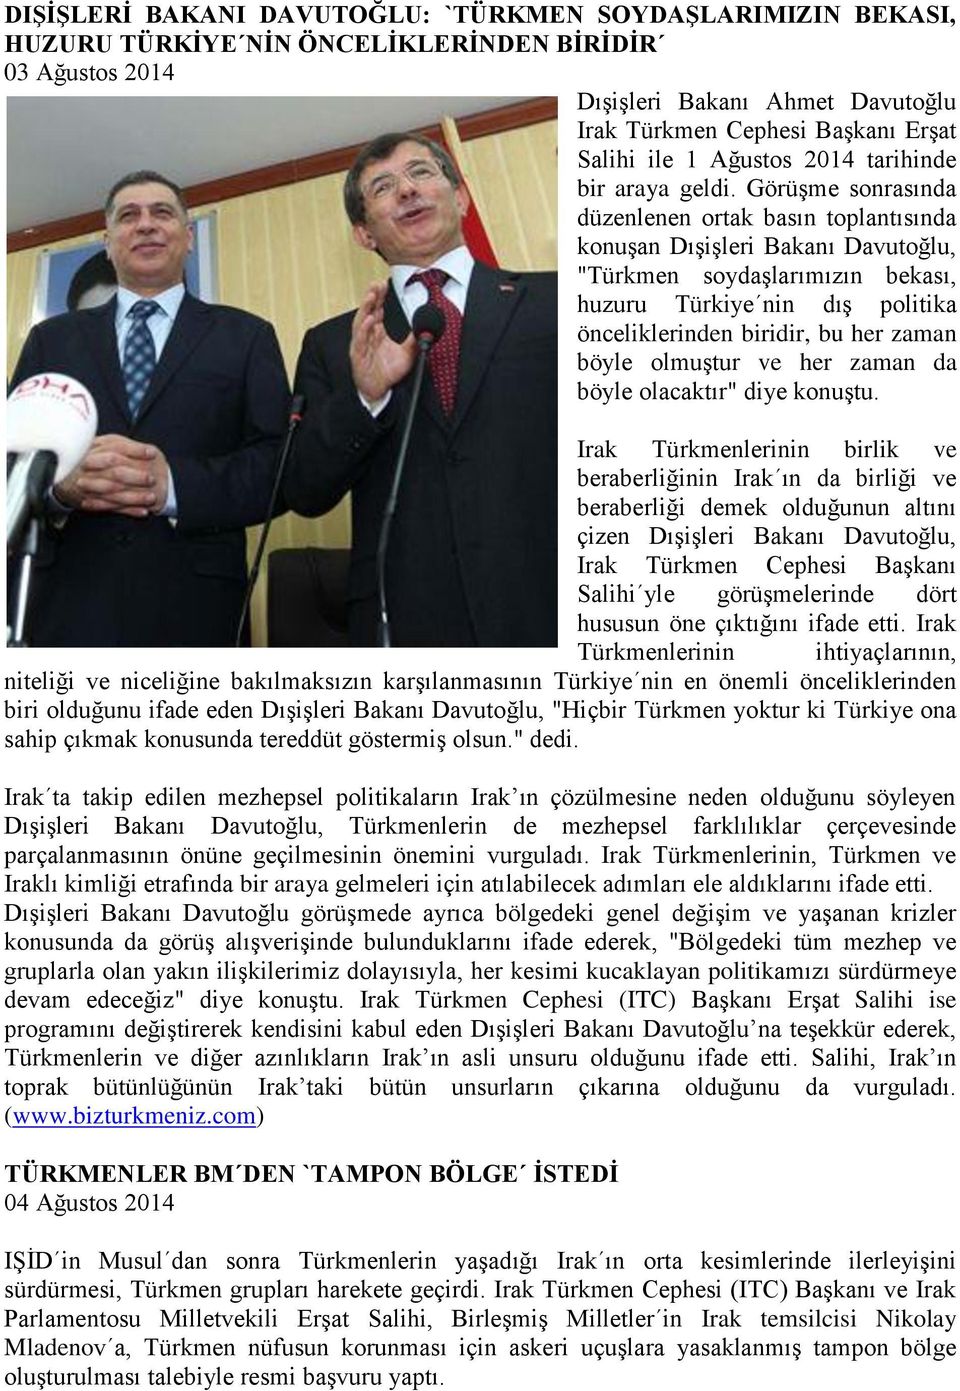 Görüşme sonrasında düzenlenen ortak basın toplantısında konuşan Dışişleri Bakanı Davutoğlu, "Türkmen soydaşlarımızın bekası, huzuru Türkiye nin dış politika önceliklerinden biridir, bu her zaman